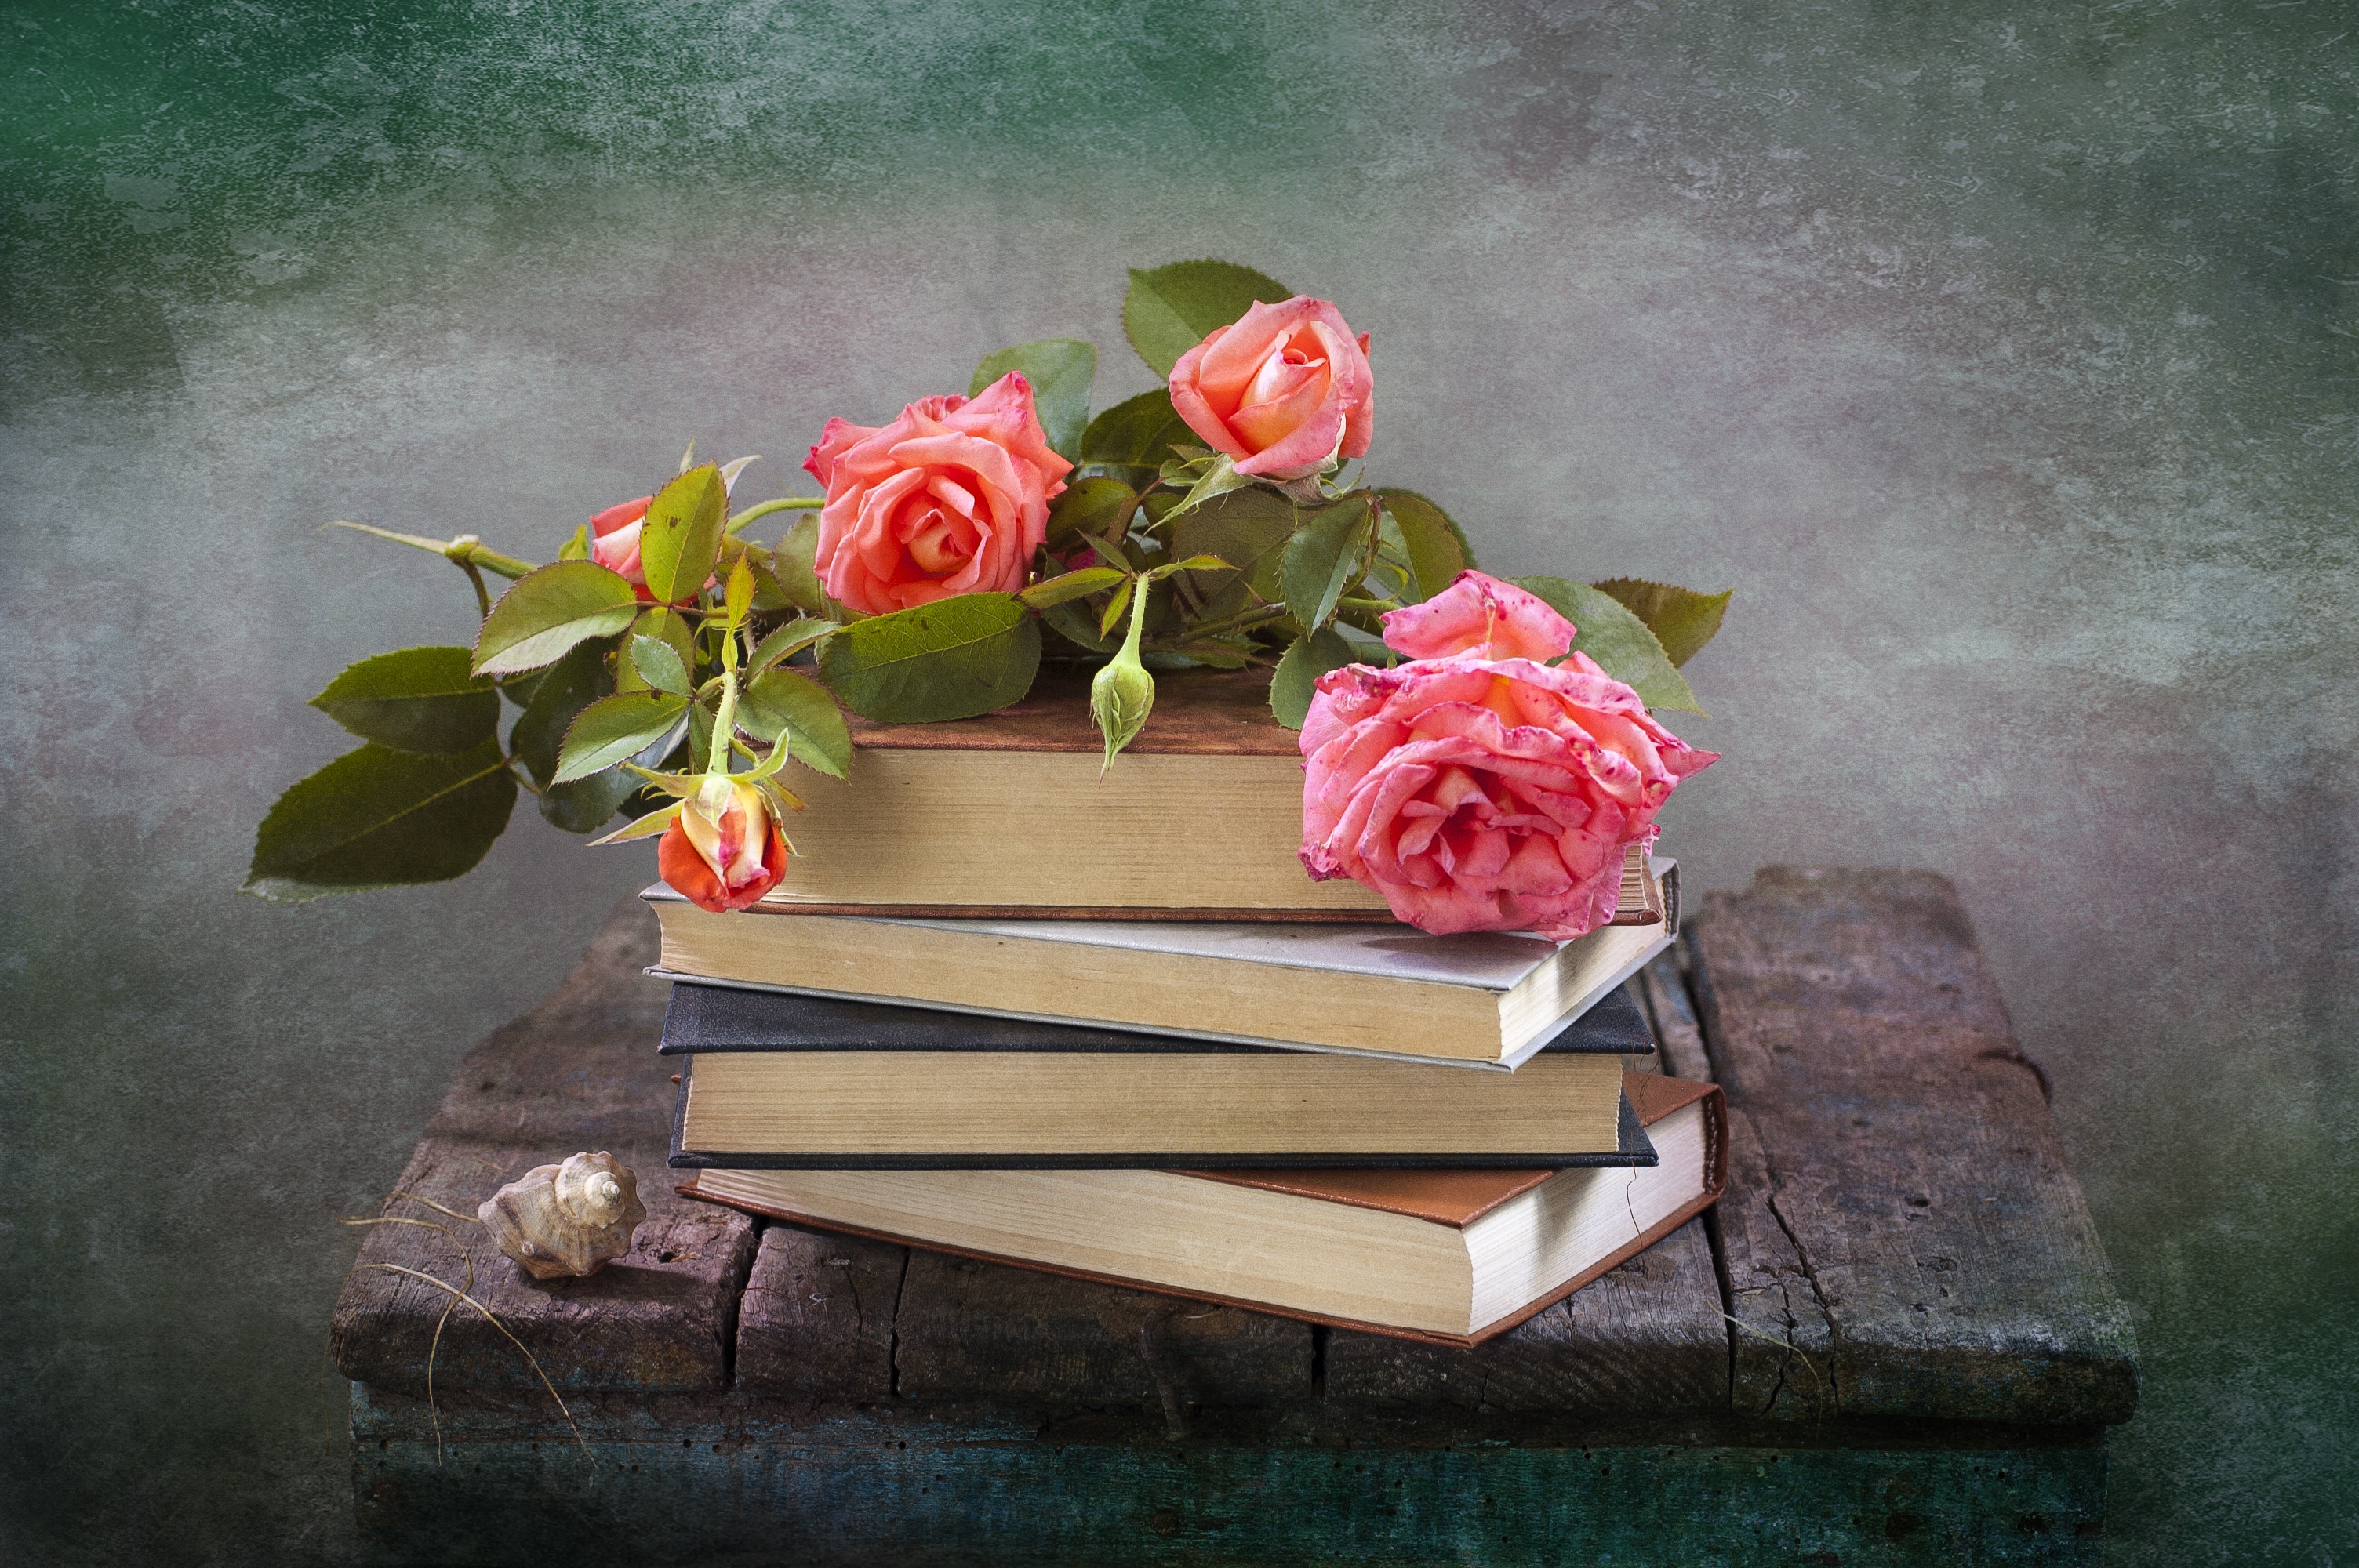 Скачать обои бесплатно Ракушки, Натюрморт, Цветок, Роза, Книга, Фотографии, Розовый Цветок картинка на рабочий стол ПК